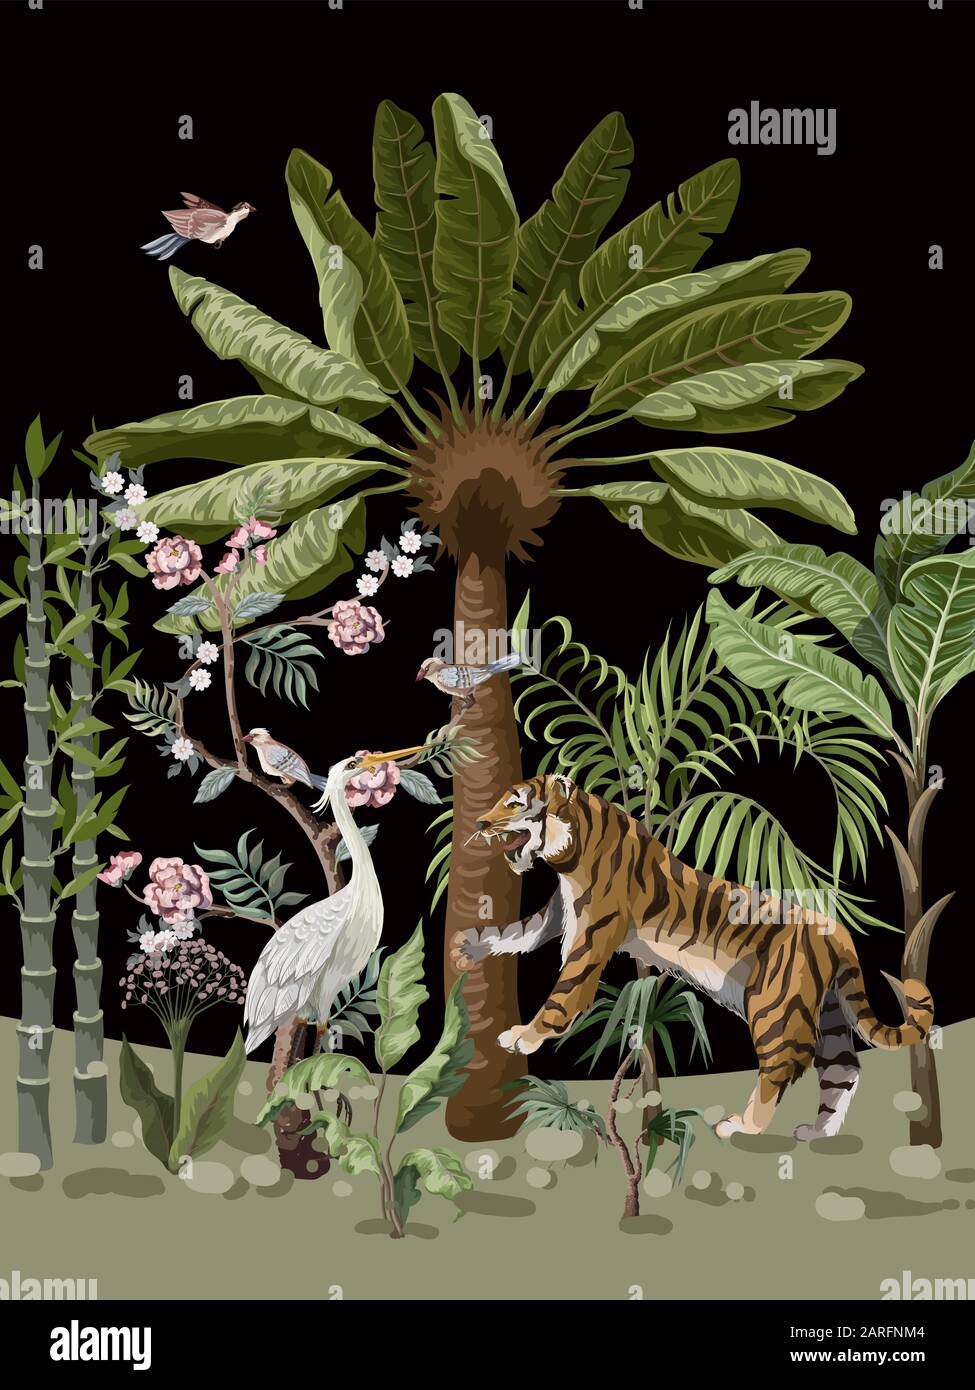 Muster im chinoiserie-Stil mit Tiger-, Reiher- und Dschungelbäumen. Stock Vektor